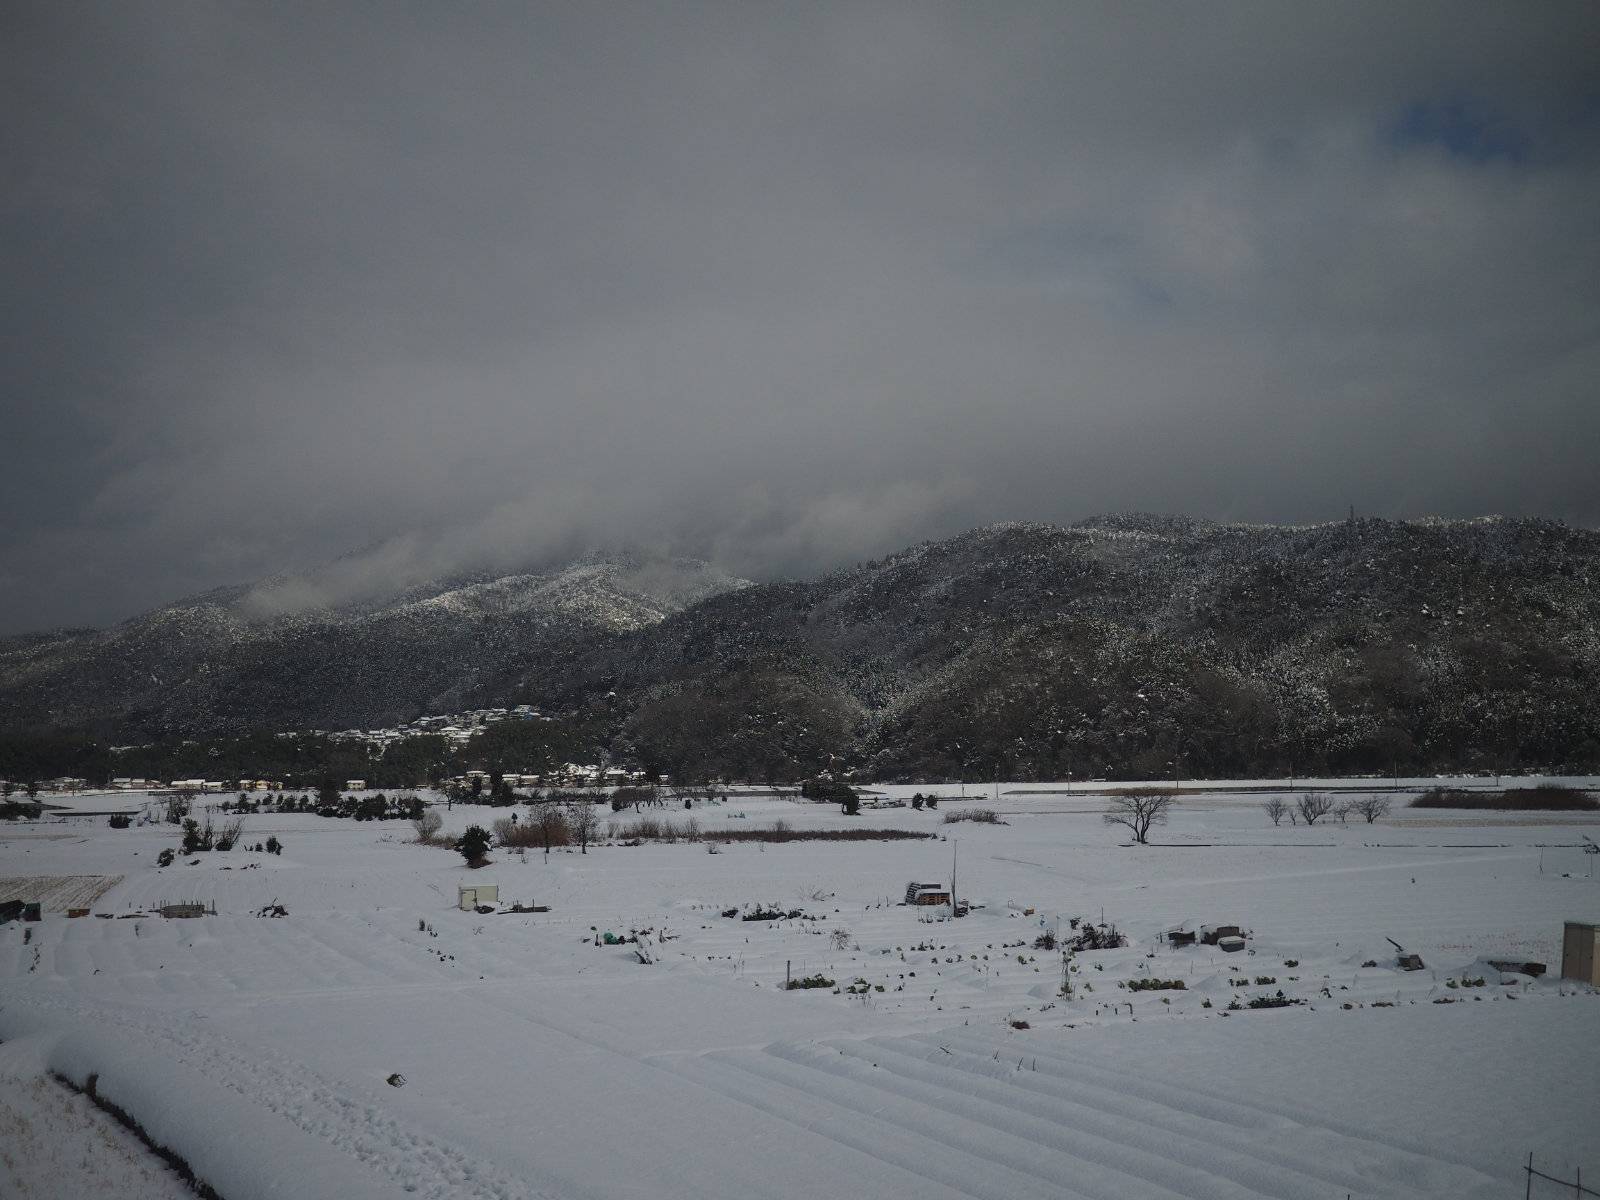 Snowy mountain fields